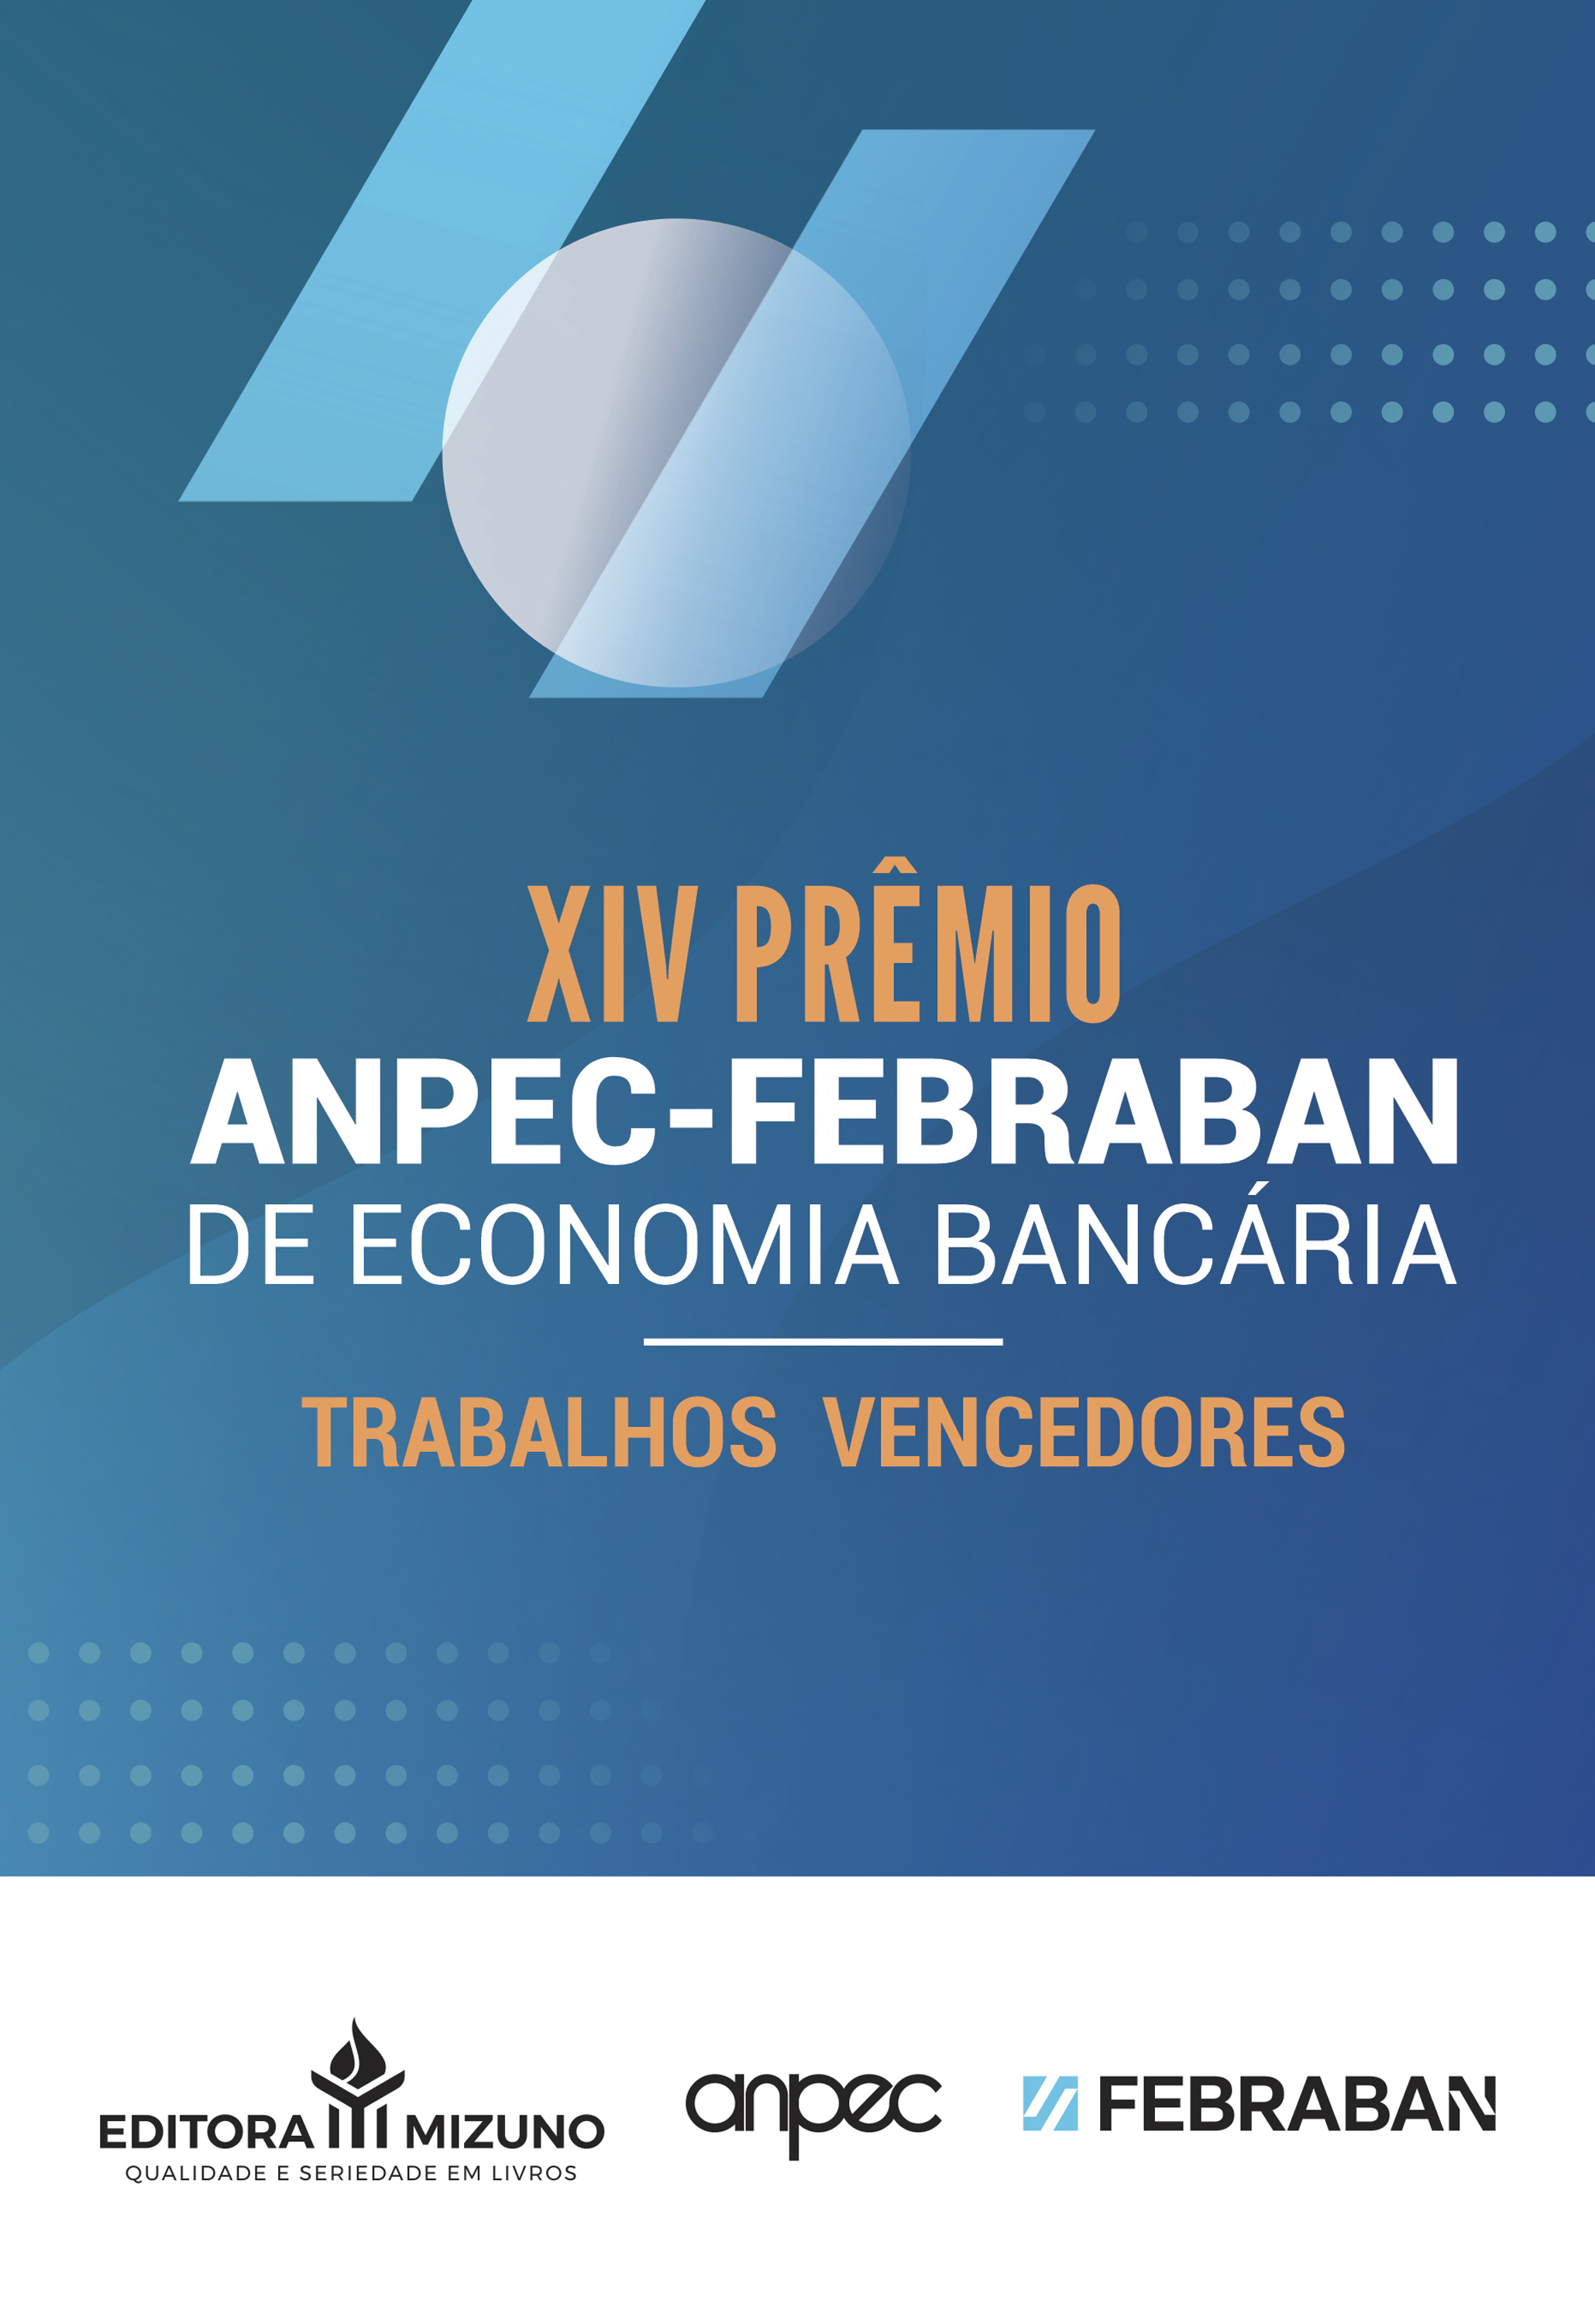 XIV Prêmio ANPEC-FEBRABAN de Economia Bancária